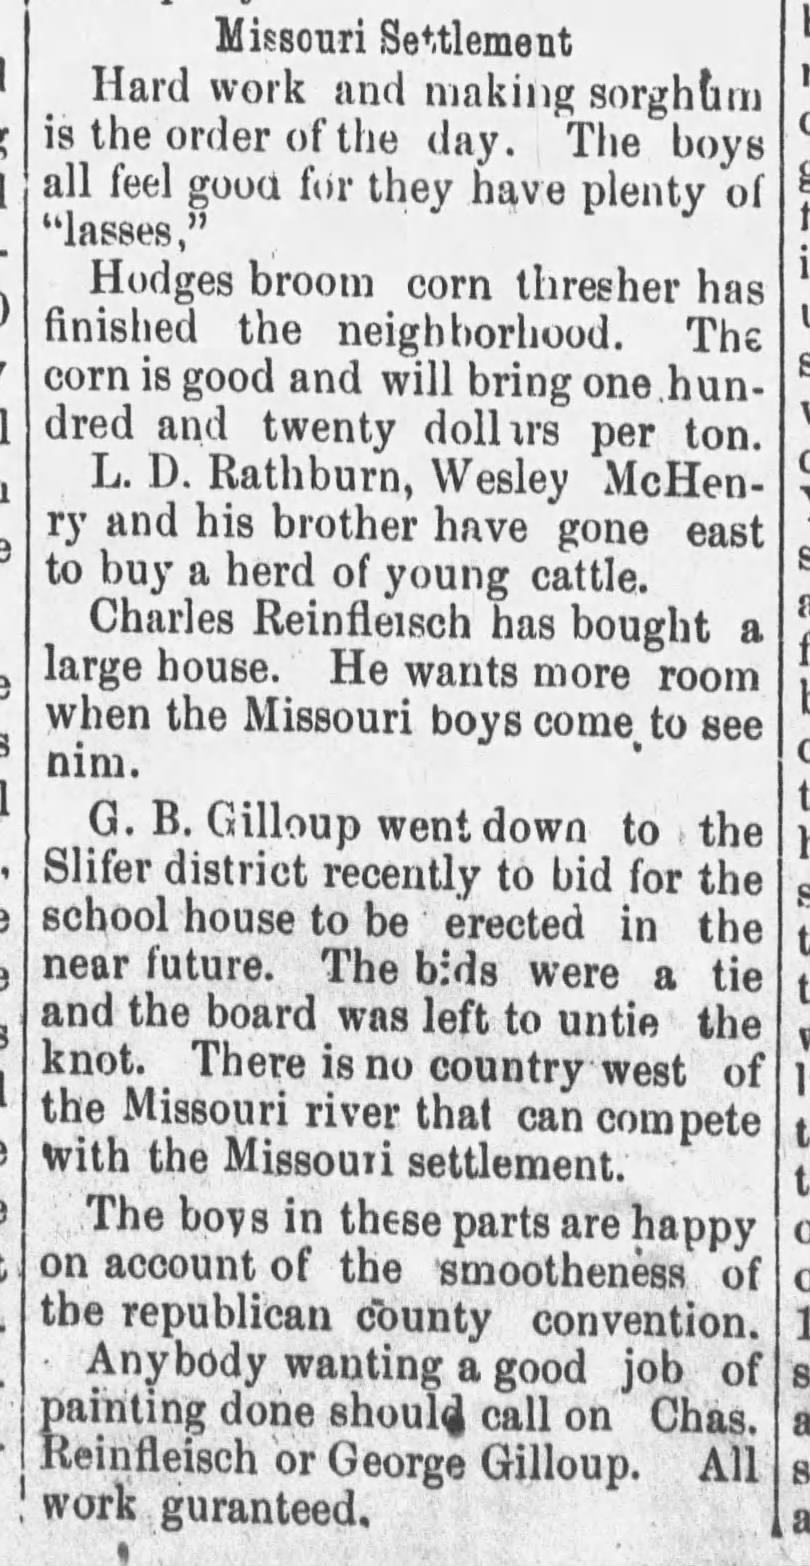 Missouri Settlement 1890